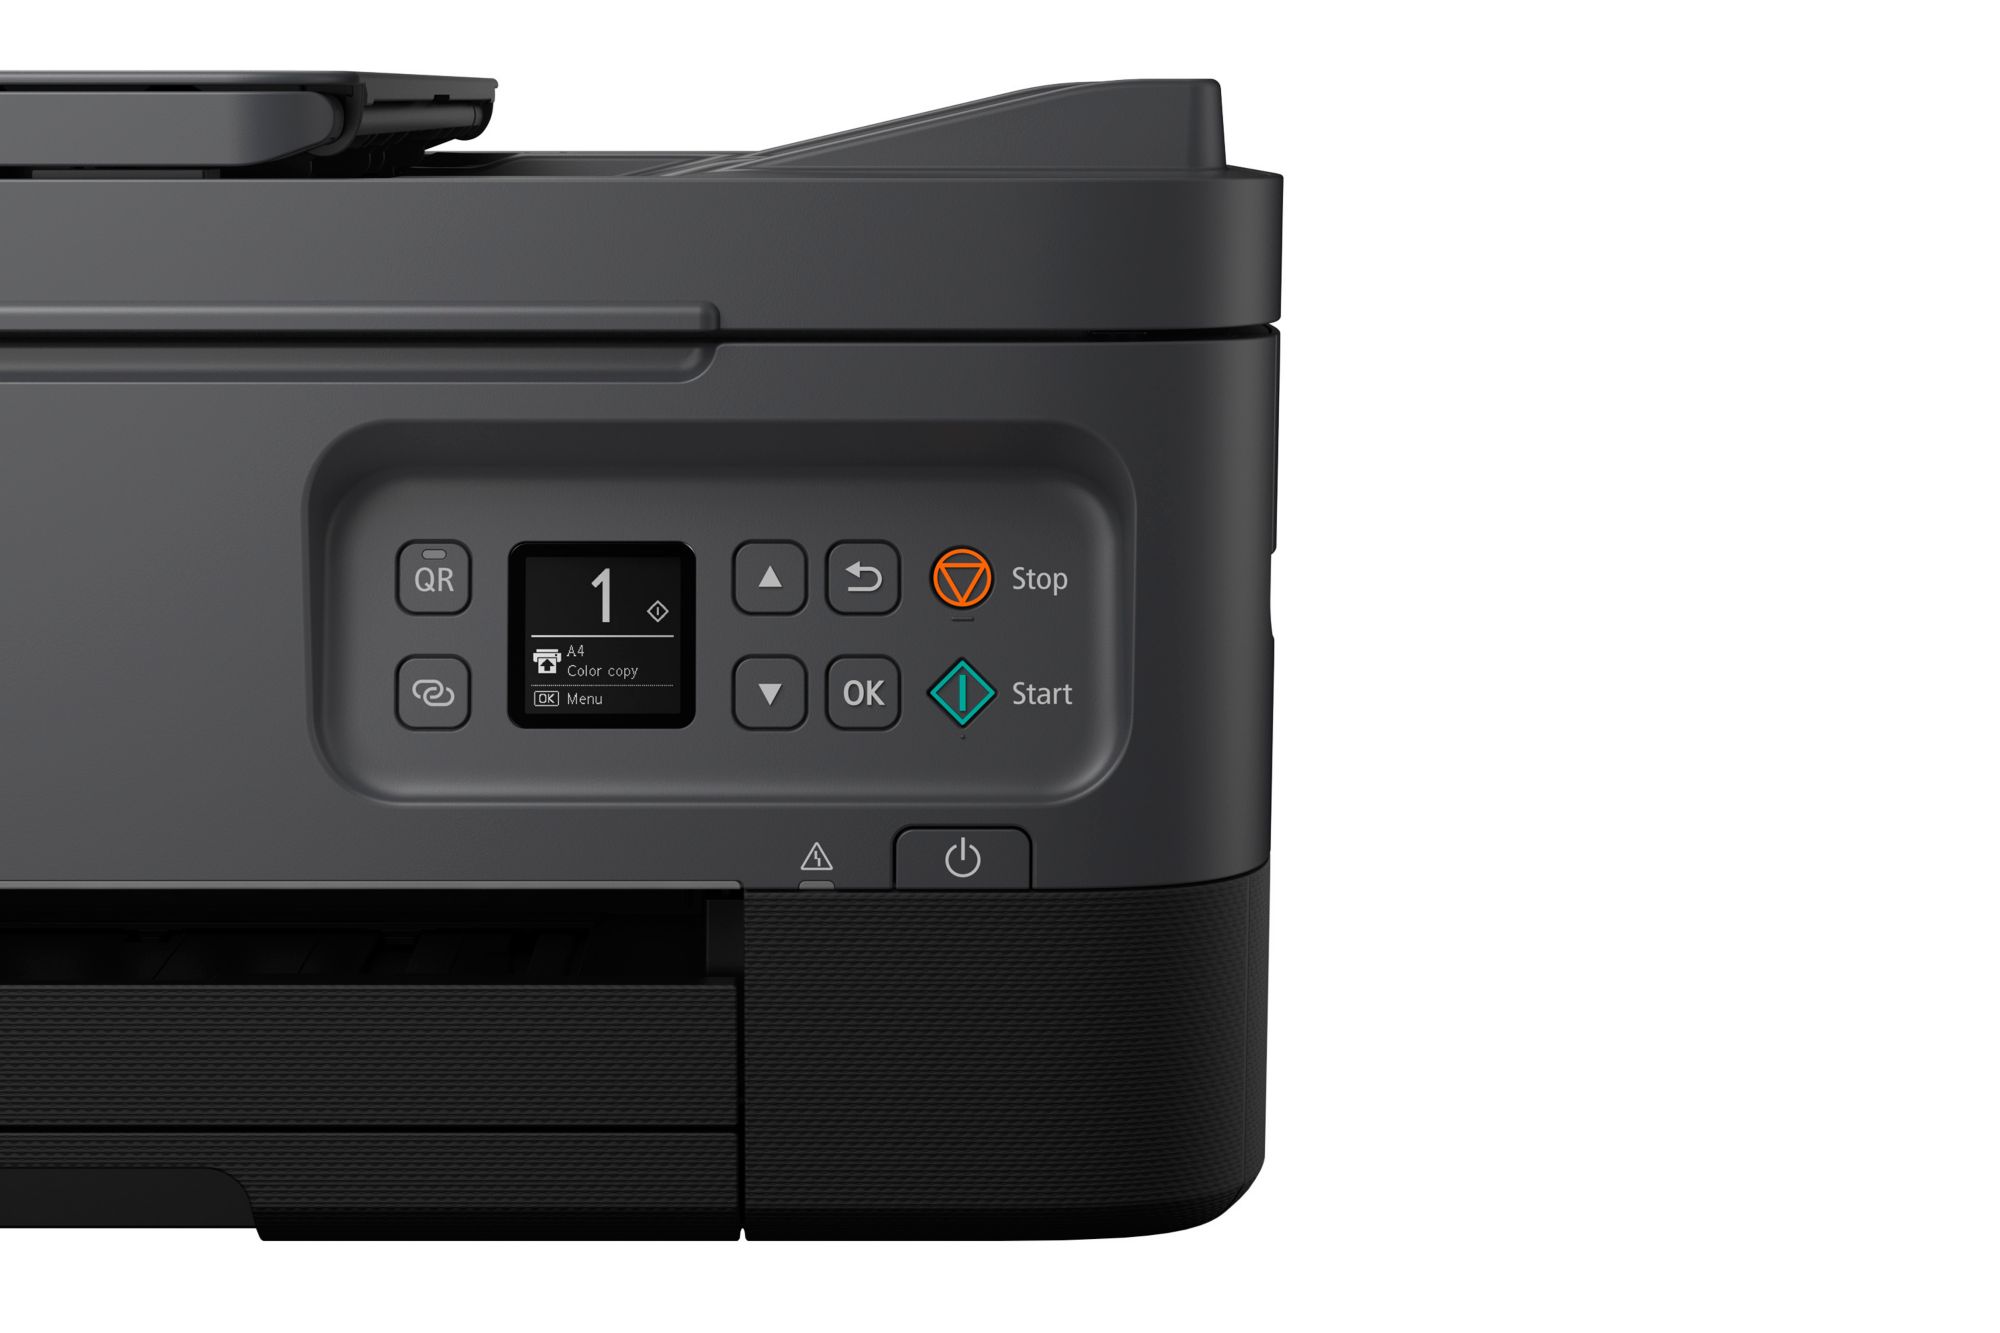 ++ PIXMA WLAN Scanner Cyberport Kopierer Canon Tintenstrahl-Multifunktionsdrucker TS7450a